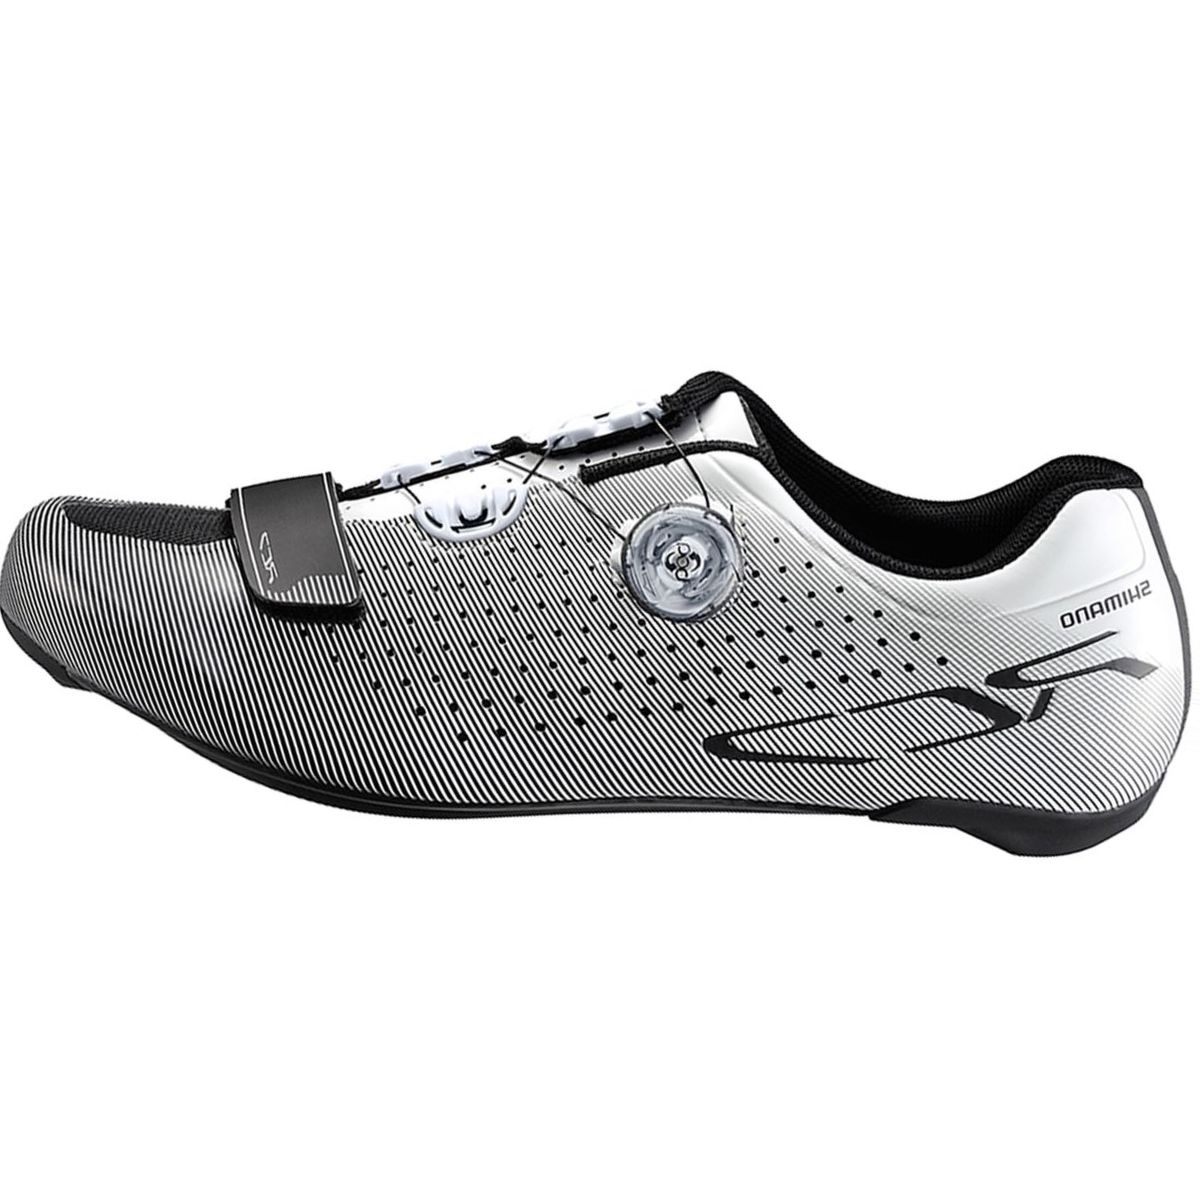 Shimano SH-RC7 Wide Cycling Shoe - Men's